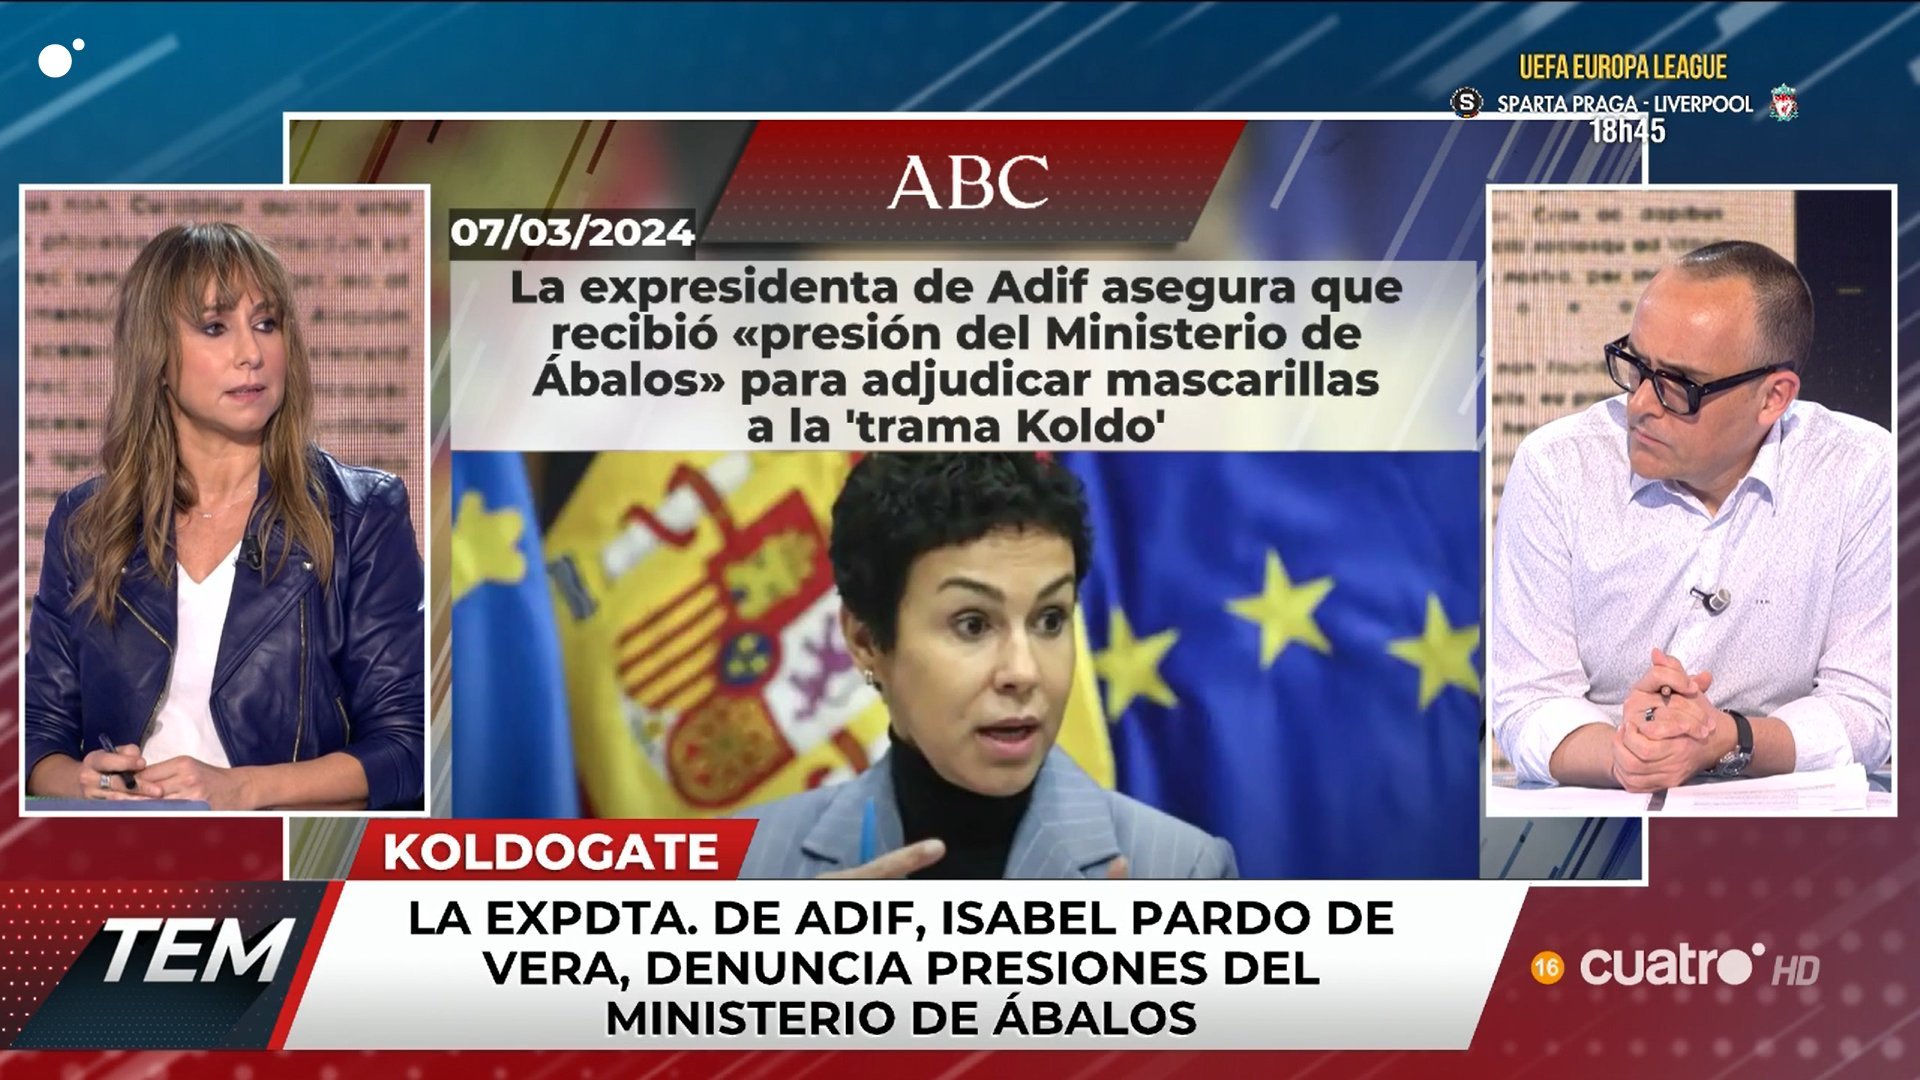 La sorprendente amenaza de Ana Pardo de Vera a Margallo en directo: "Ten cuidado con lo que dices"